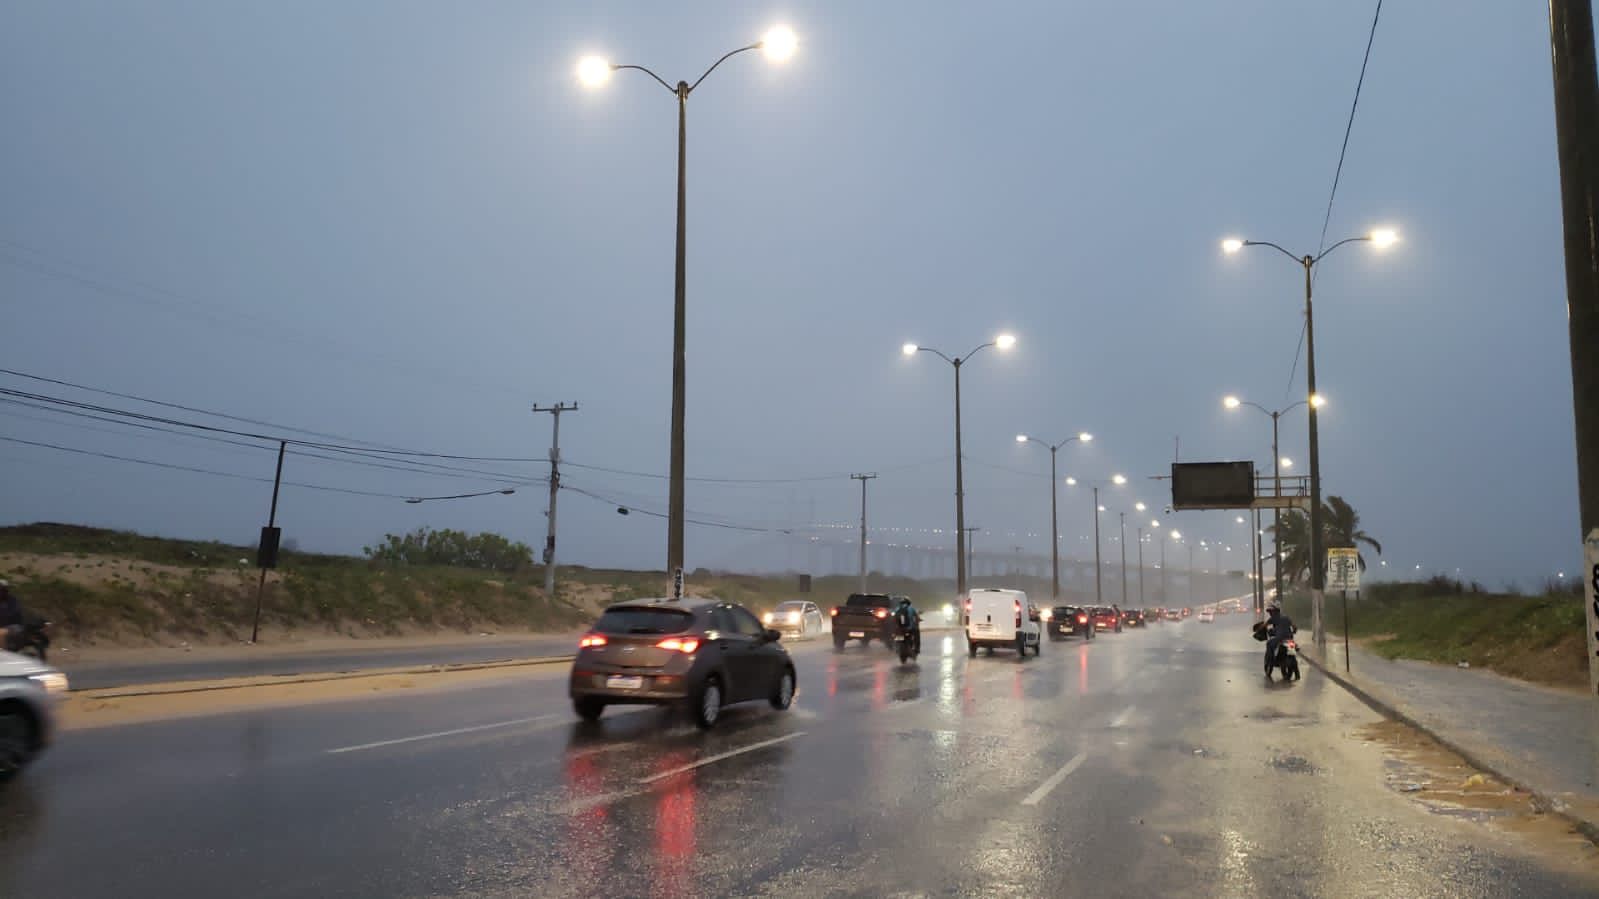 Inmet divulga dois alertas de chuvas intensas em municípios do RN; veja lista